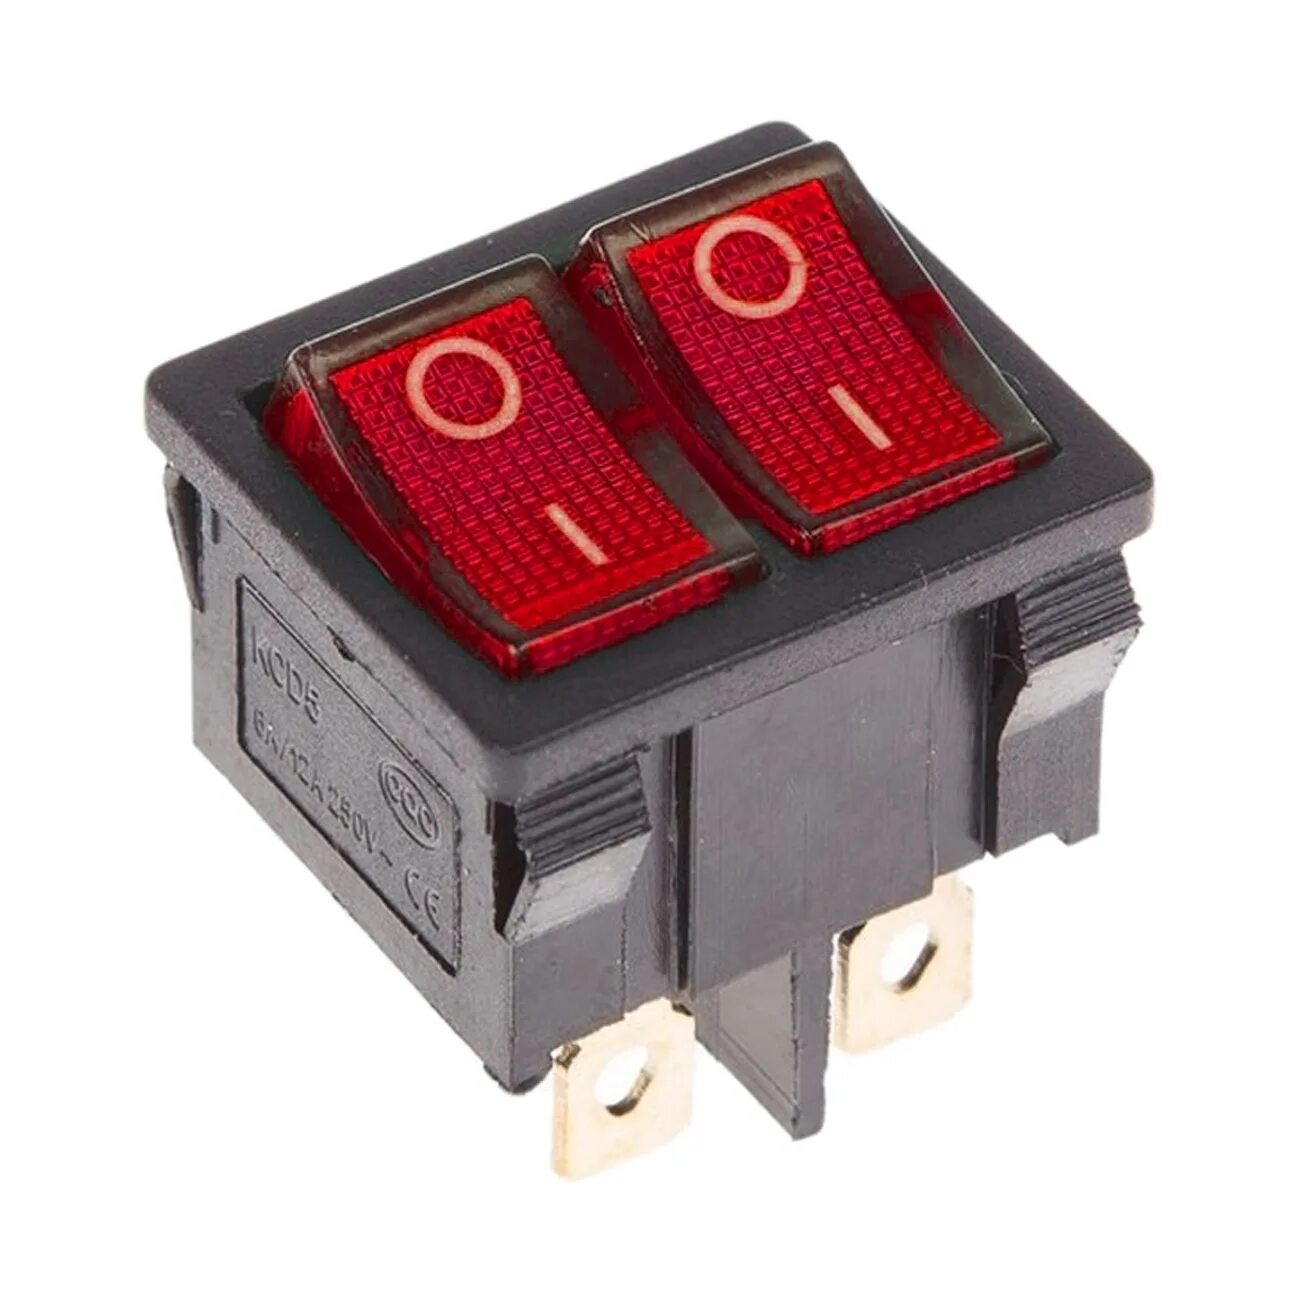 Двойной выключатель купить. Выключатель клавишный 250v 15а (6с) on-off красный с подсветкой двойной Rexant. Выключатель клавишный 250v 15а (6с) on-off красный/зеленый с. Выключатель клавишный 250v 6а (2с) on-off черный Mini Rexant. Выключатель клавишный 250v 3а (2с) on-off черный Micro (RWB-101) Rexant.